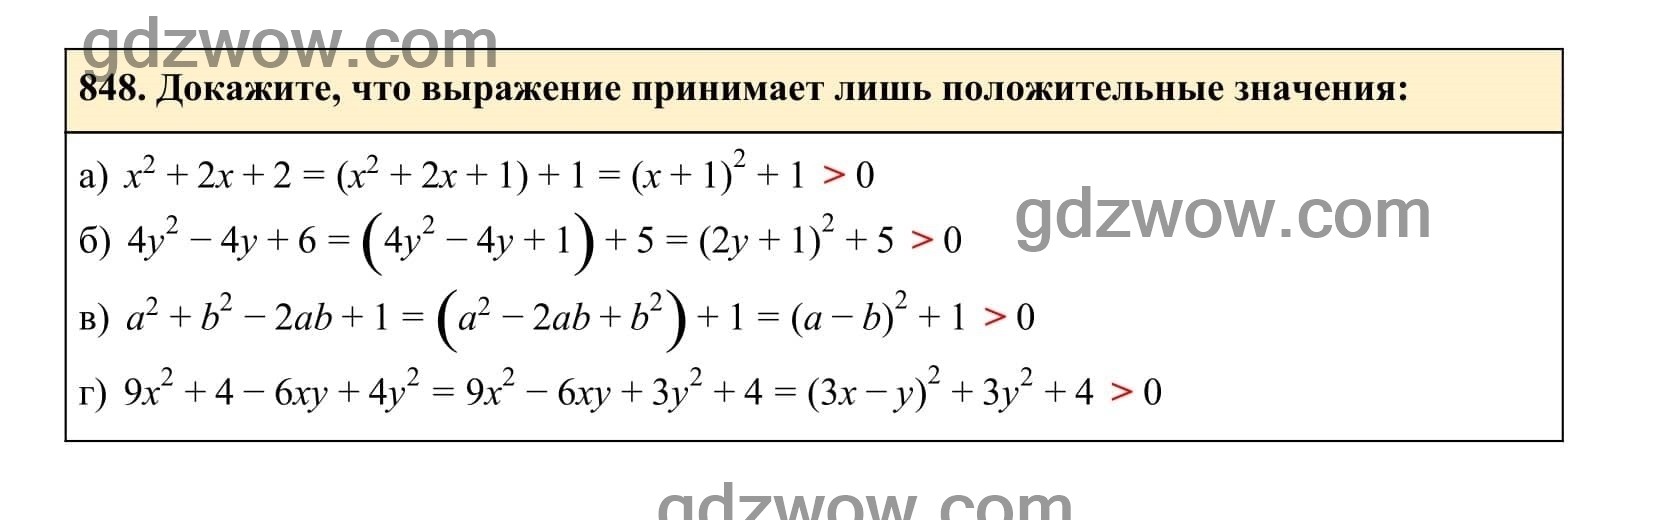 Упражнение 848 - ГДЗ по Алгебре 7 класс Учебник Макарычев (решебник) - GDZwow